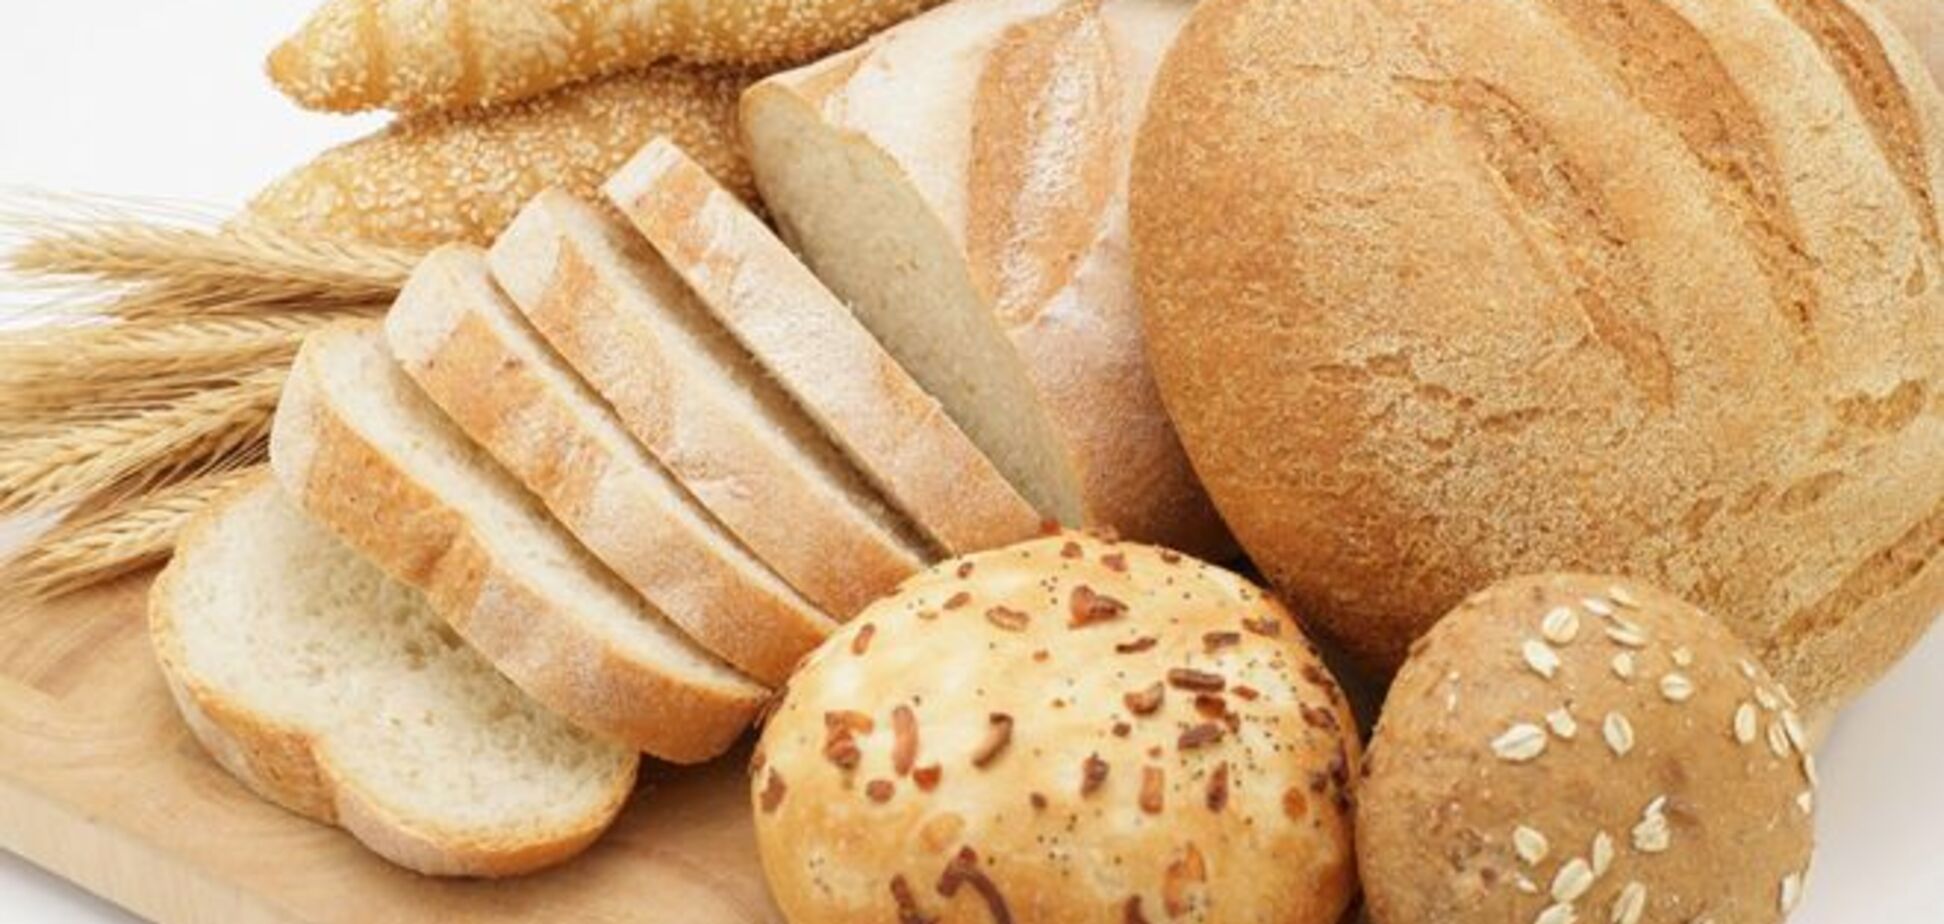 Украинцам продают испорченный хлеб, который опасен для печени